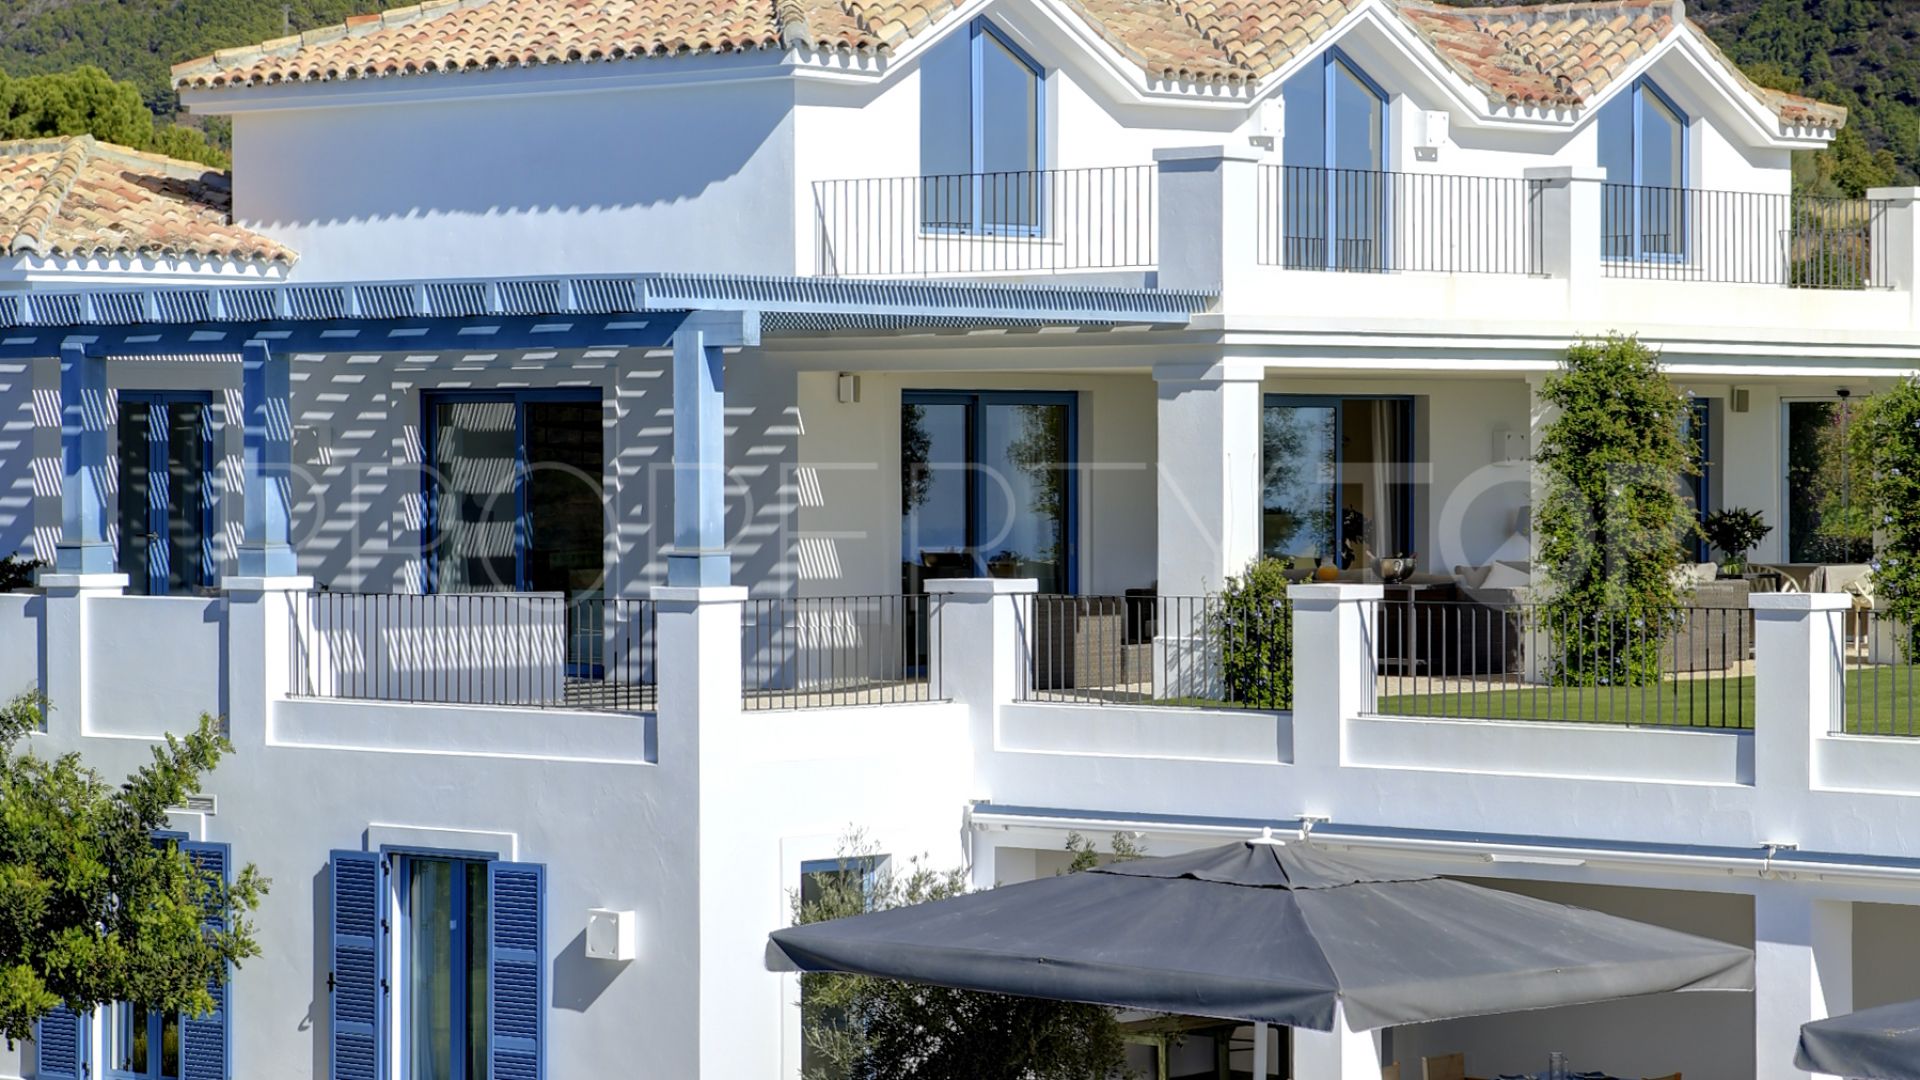 5 bedrooms villa in Montemayor for sale